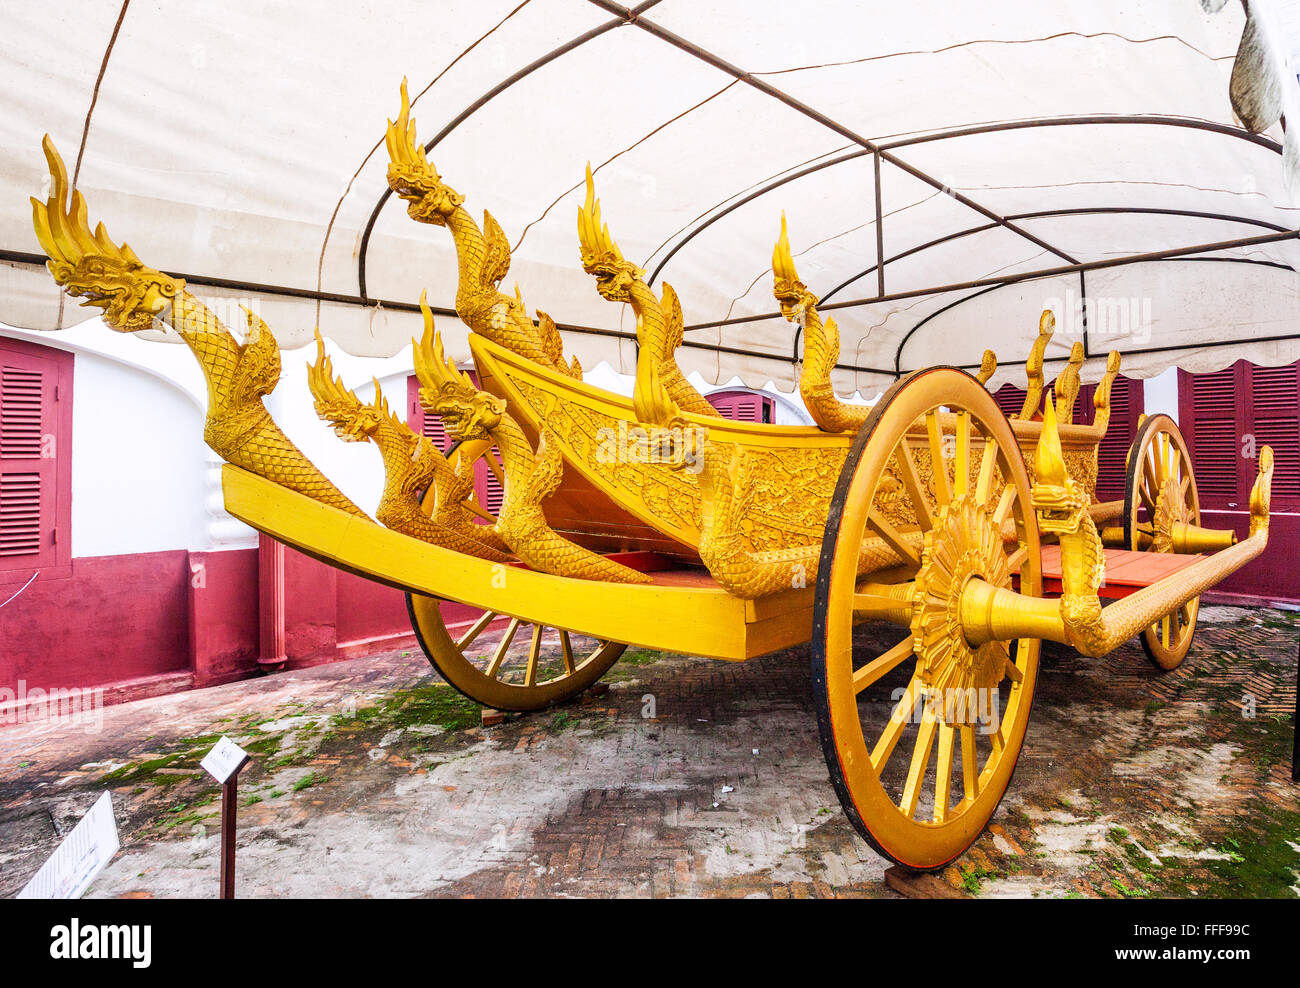 La República Democrática Popular Lao, Laos, Luang Prabang, dorados en el Carruaje Real Haw Kham Museo Palacio Real Foto de stock